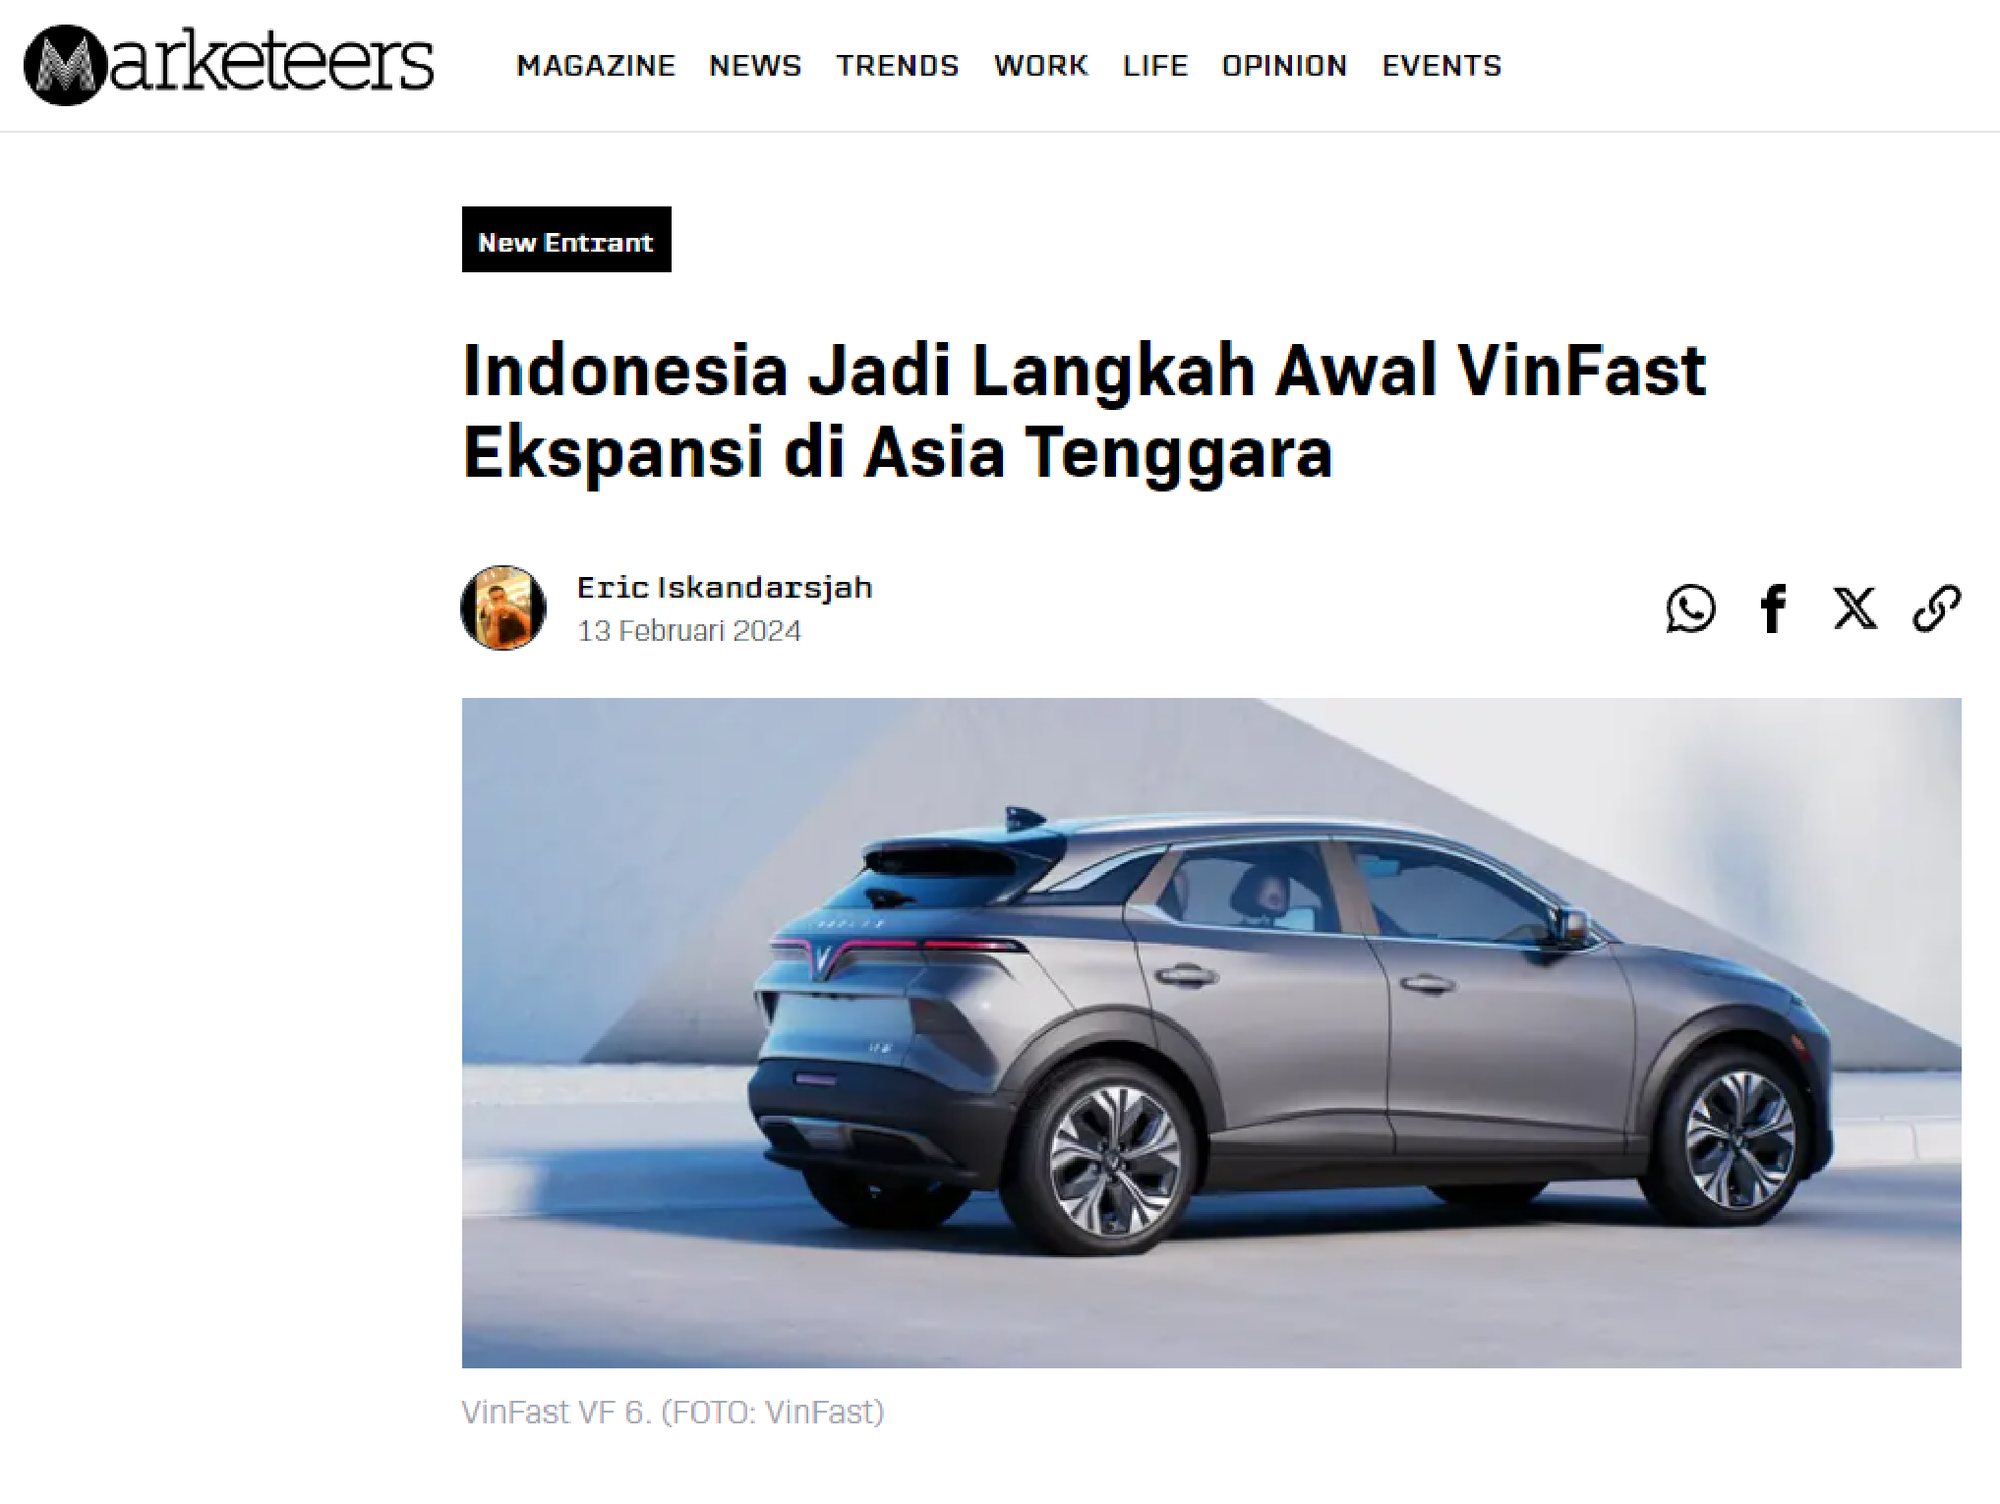 VinFast mang xe tới Indonesia, báo nước ngoài nhất loạt đưa tin: Hé lộ nhiều điều chưa được biết tới?- Ảnh 5.